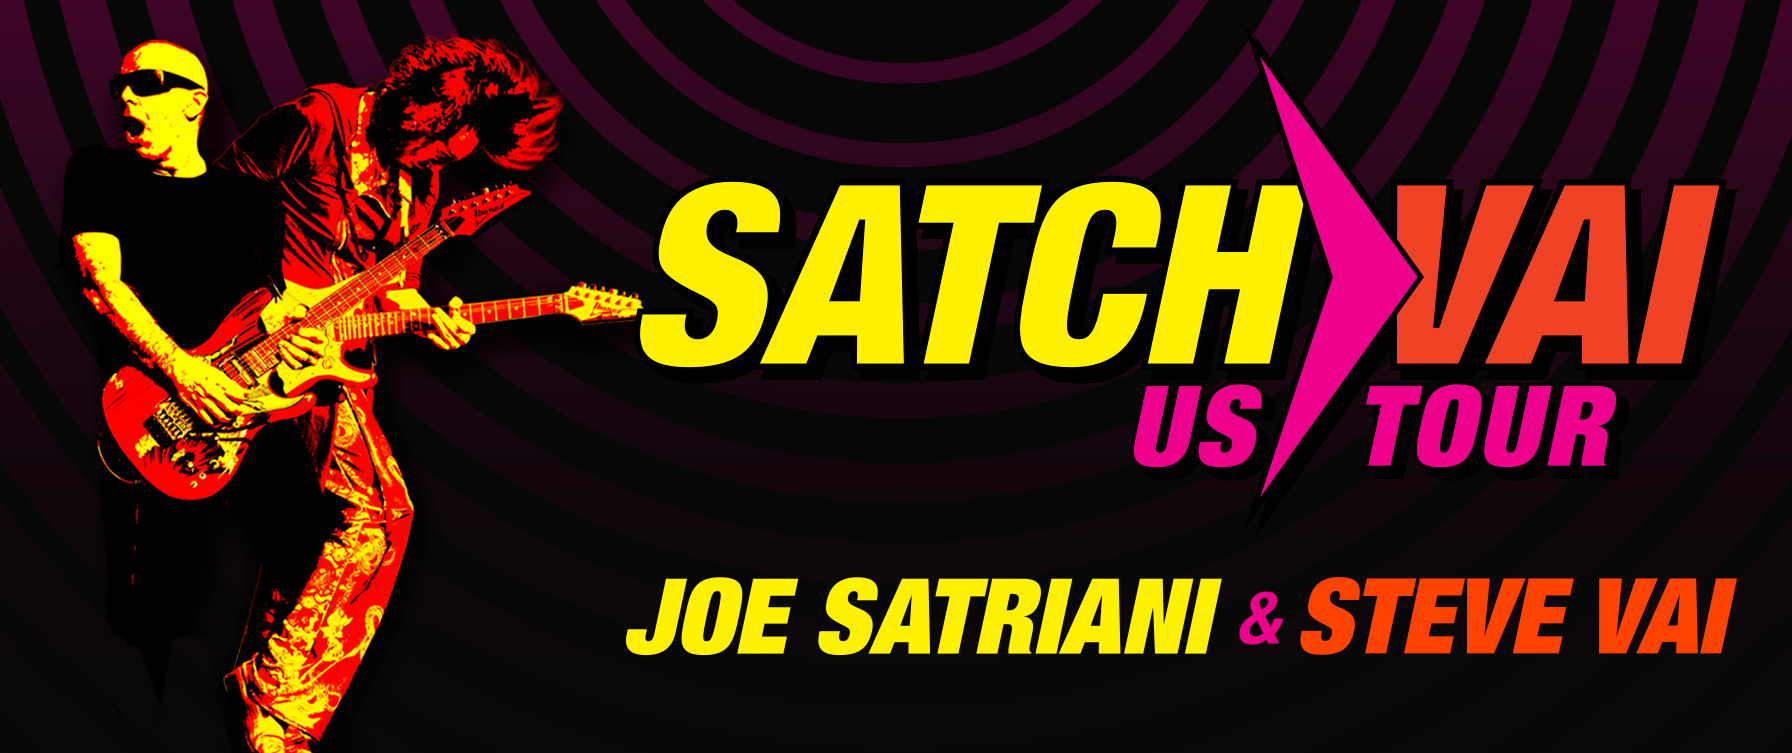 Joe Satriani & Steve Vai (1)